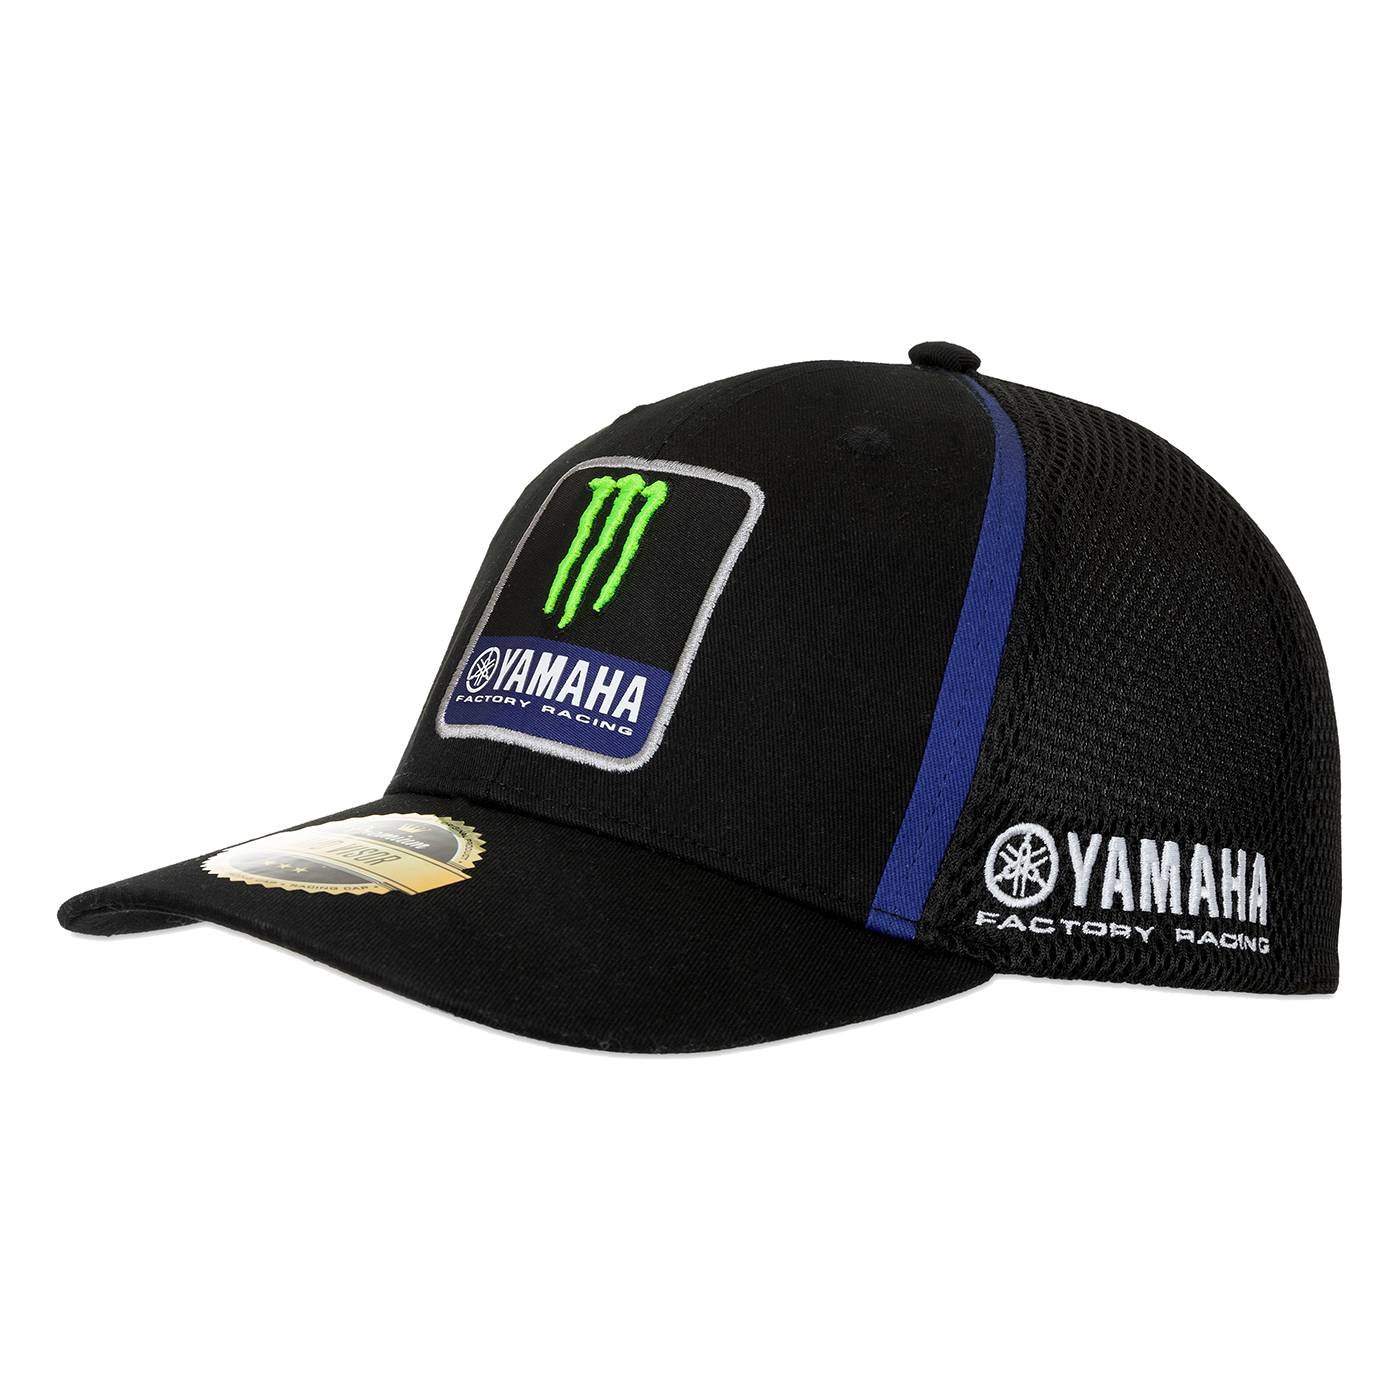 Yamaha Factory Racing cap "Team" - black